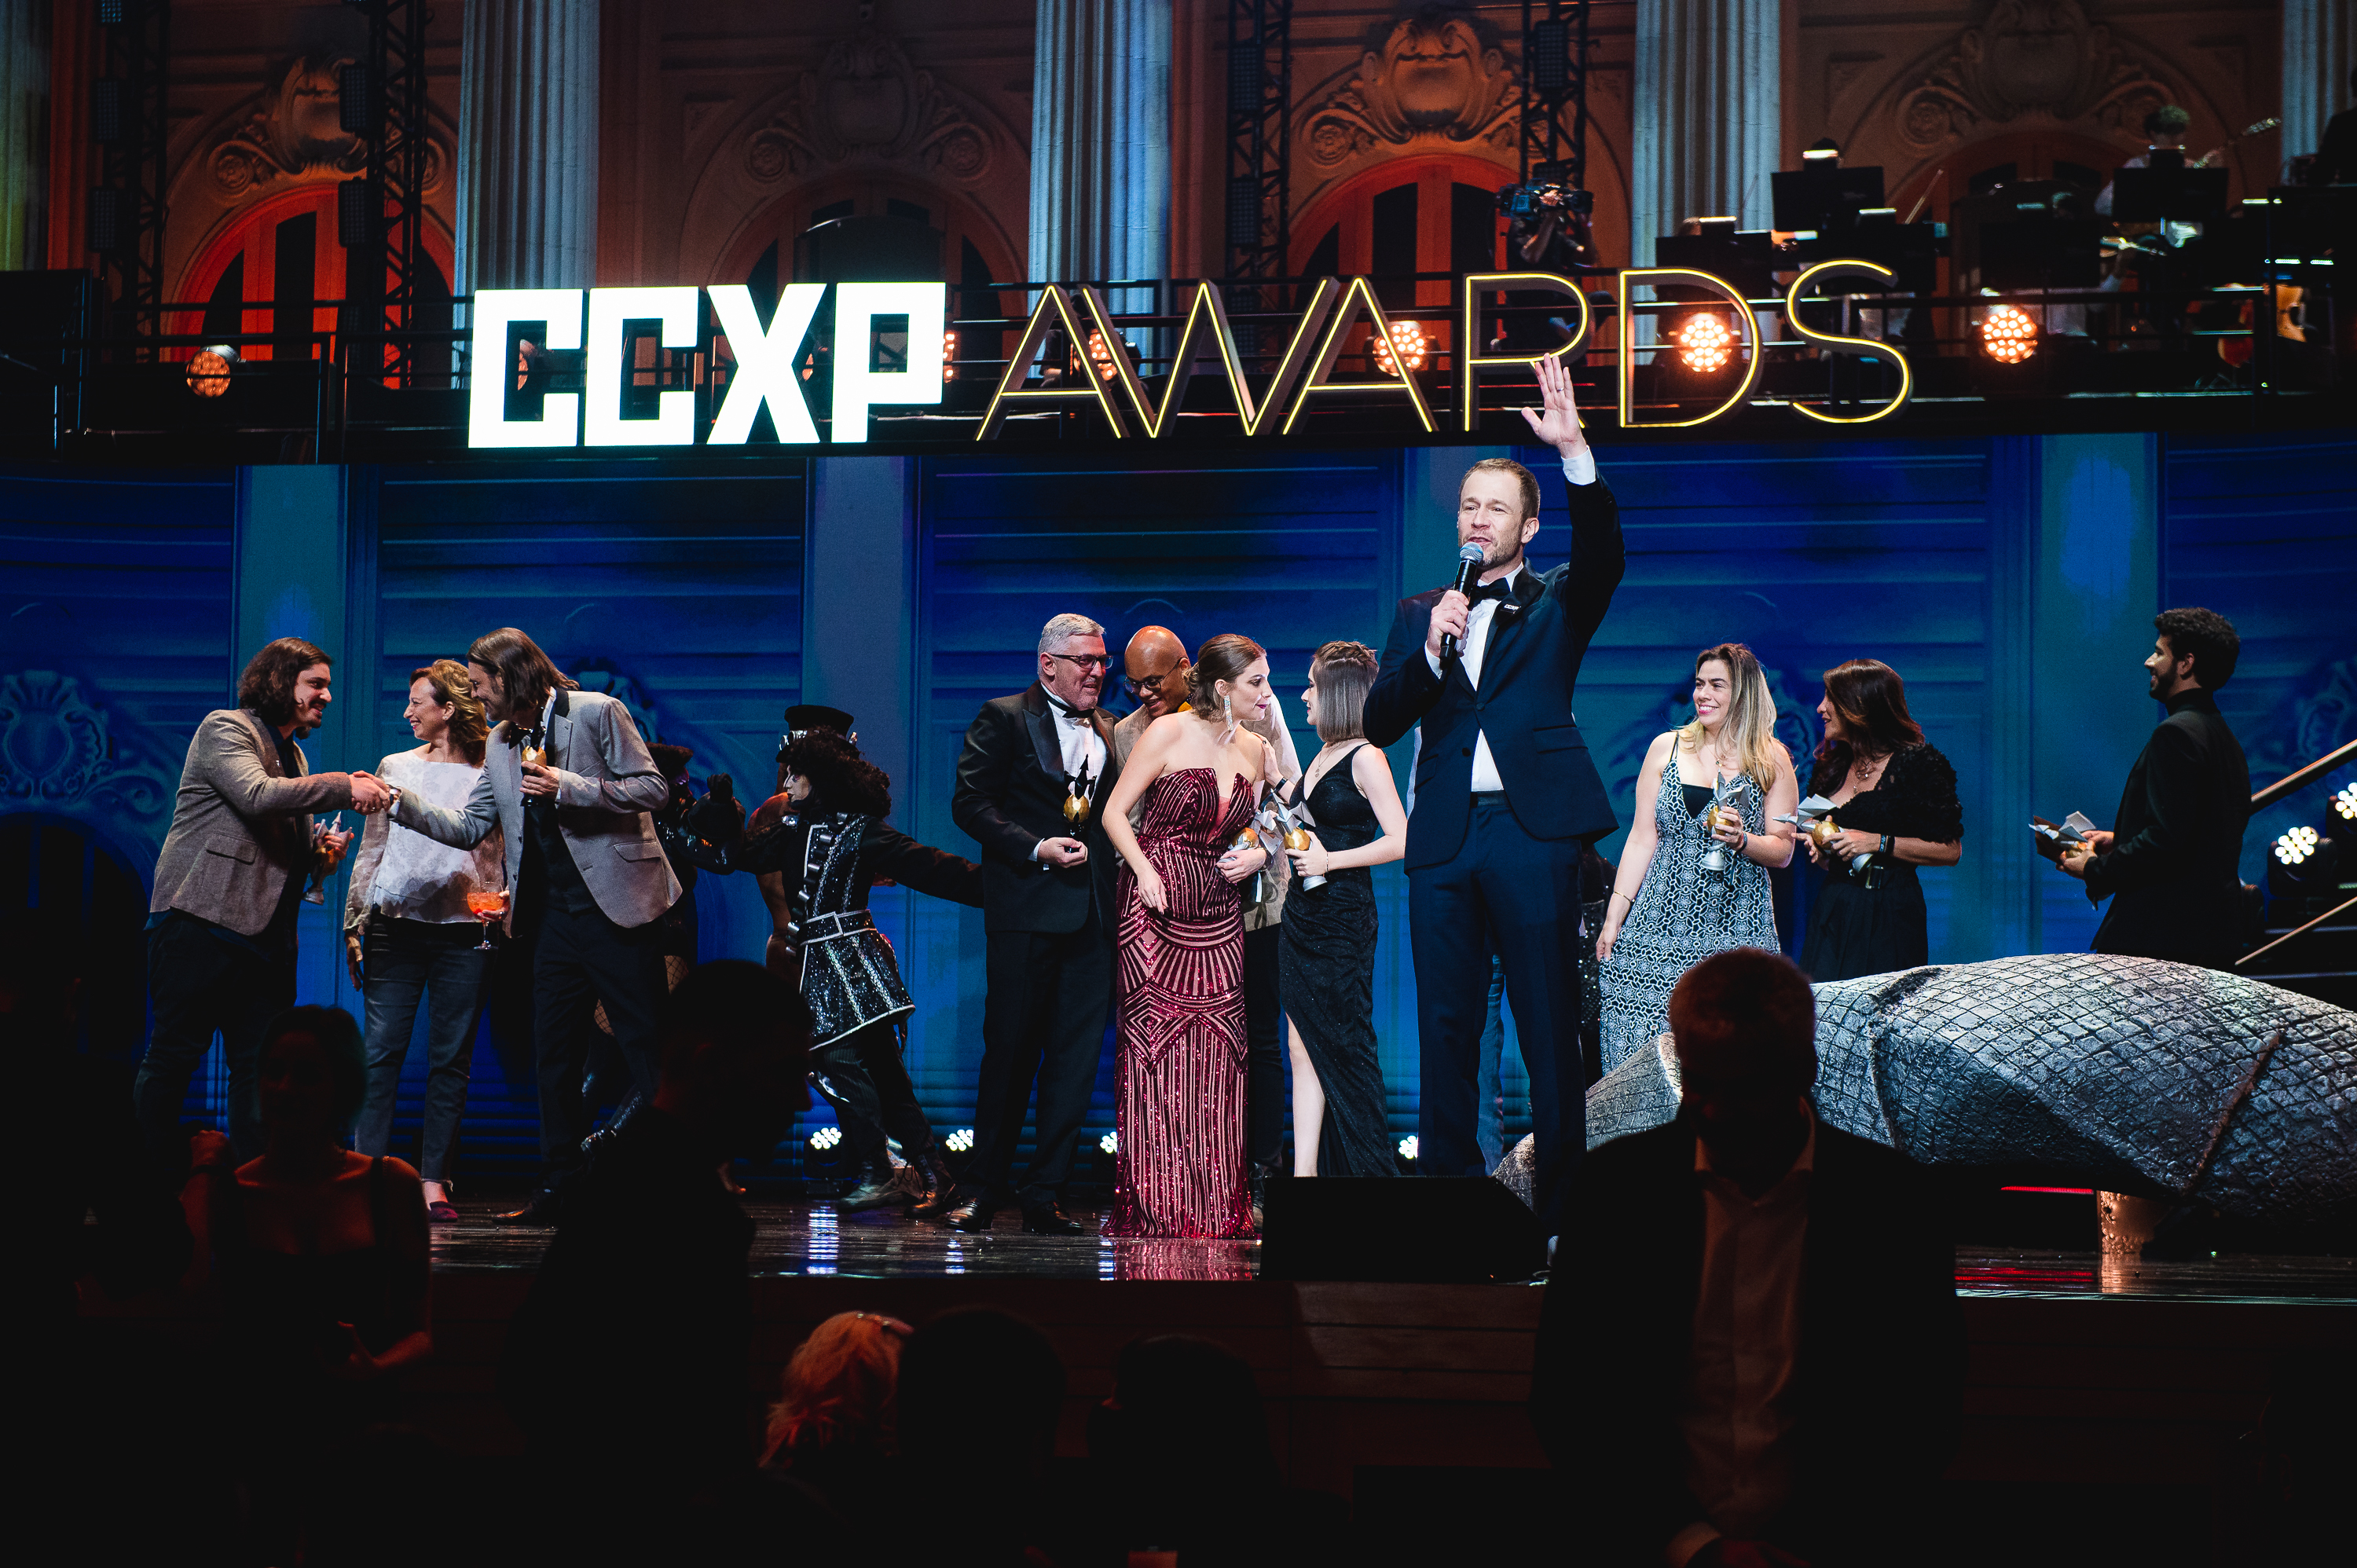 CCXP Awards faz sua primeira edição histórica com recorde de audiência. Confira!